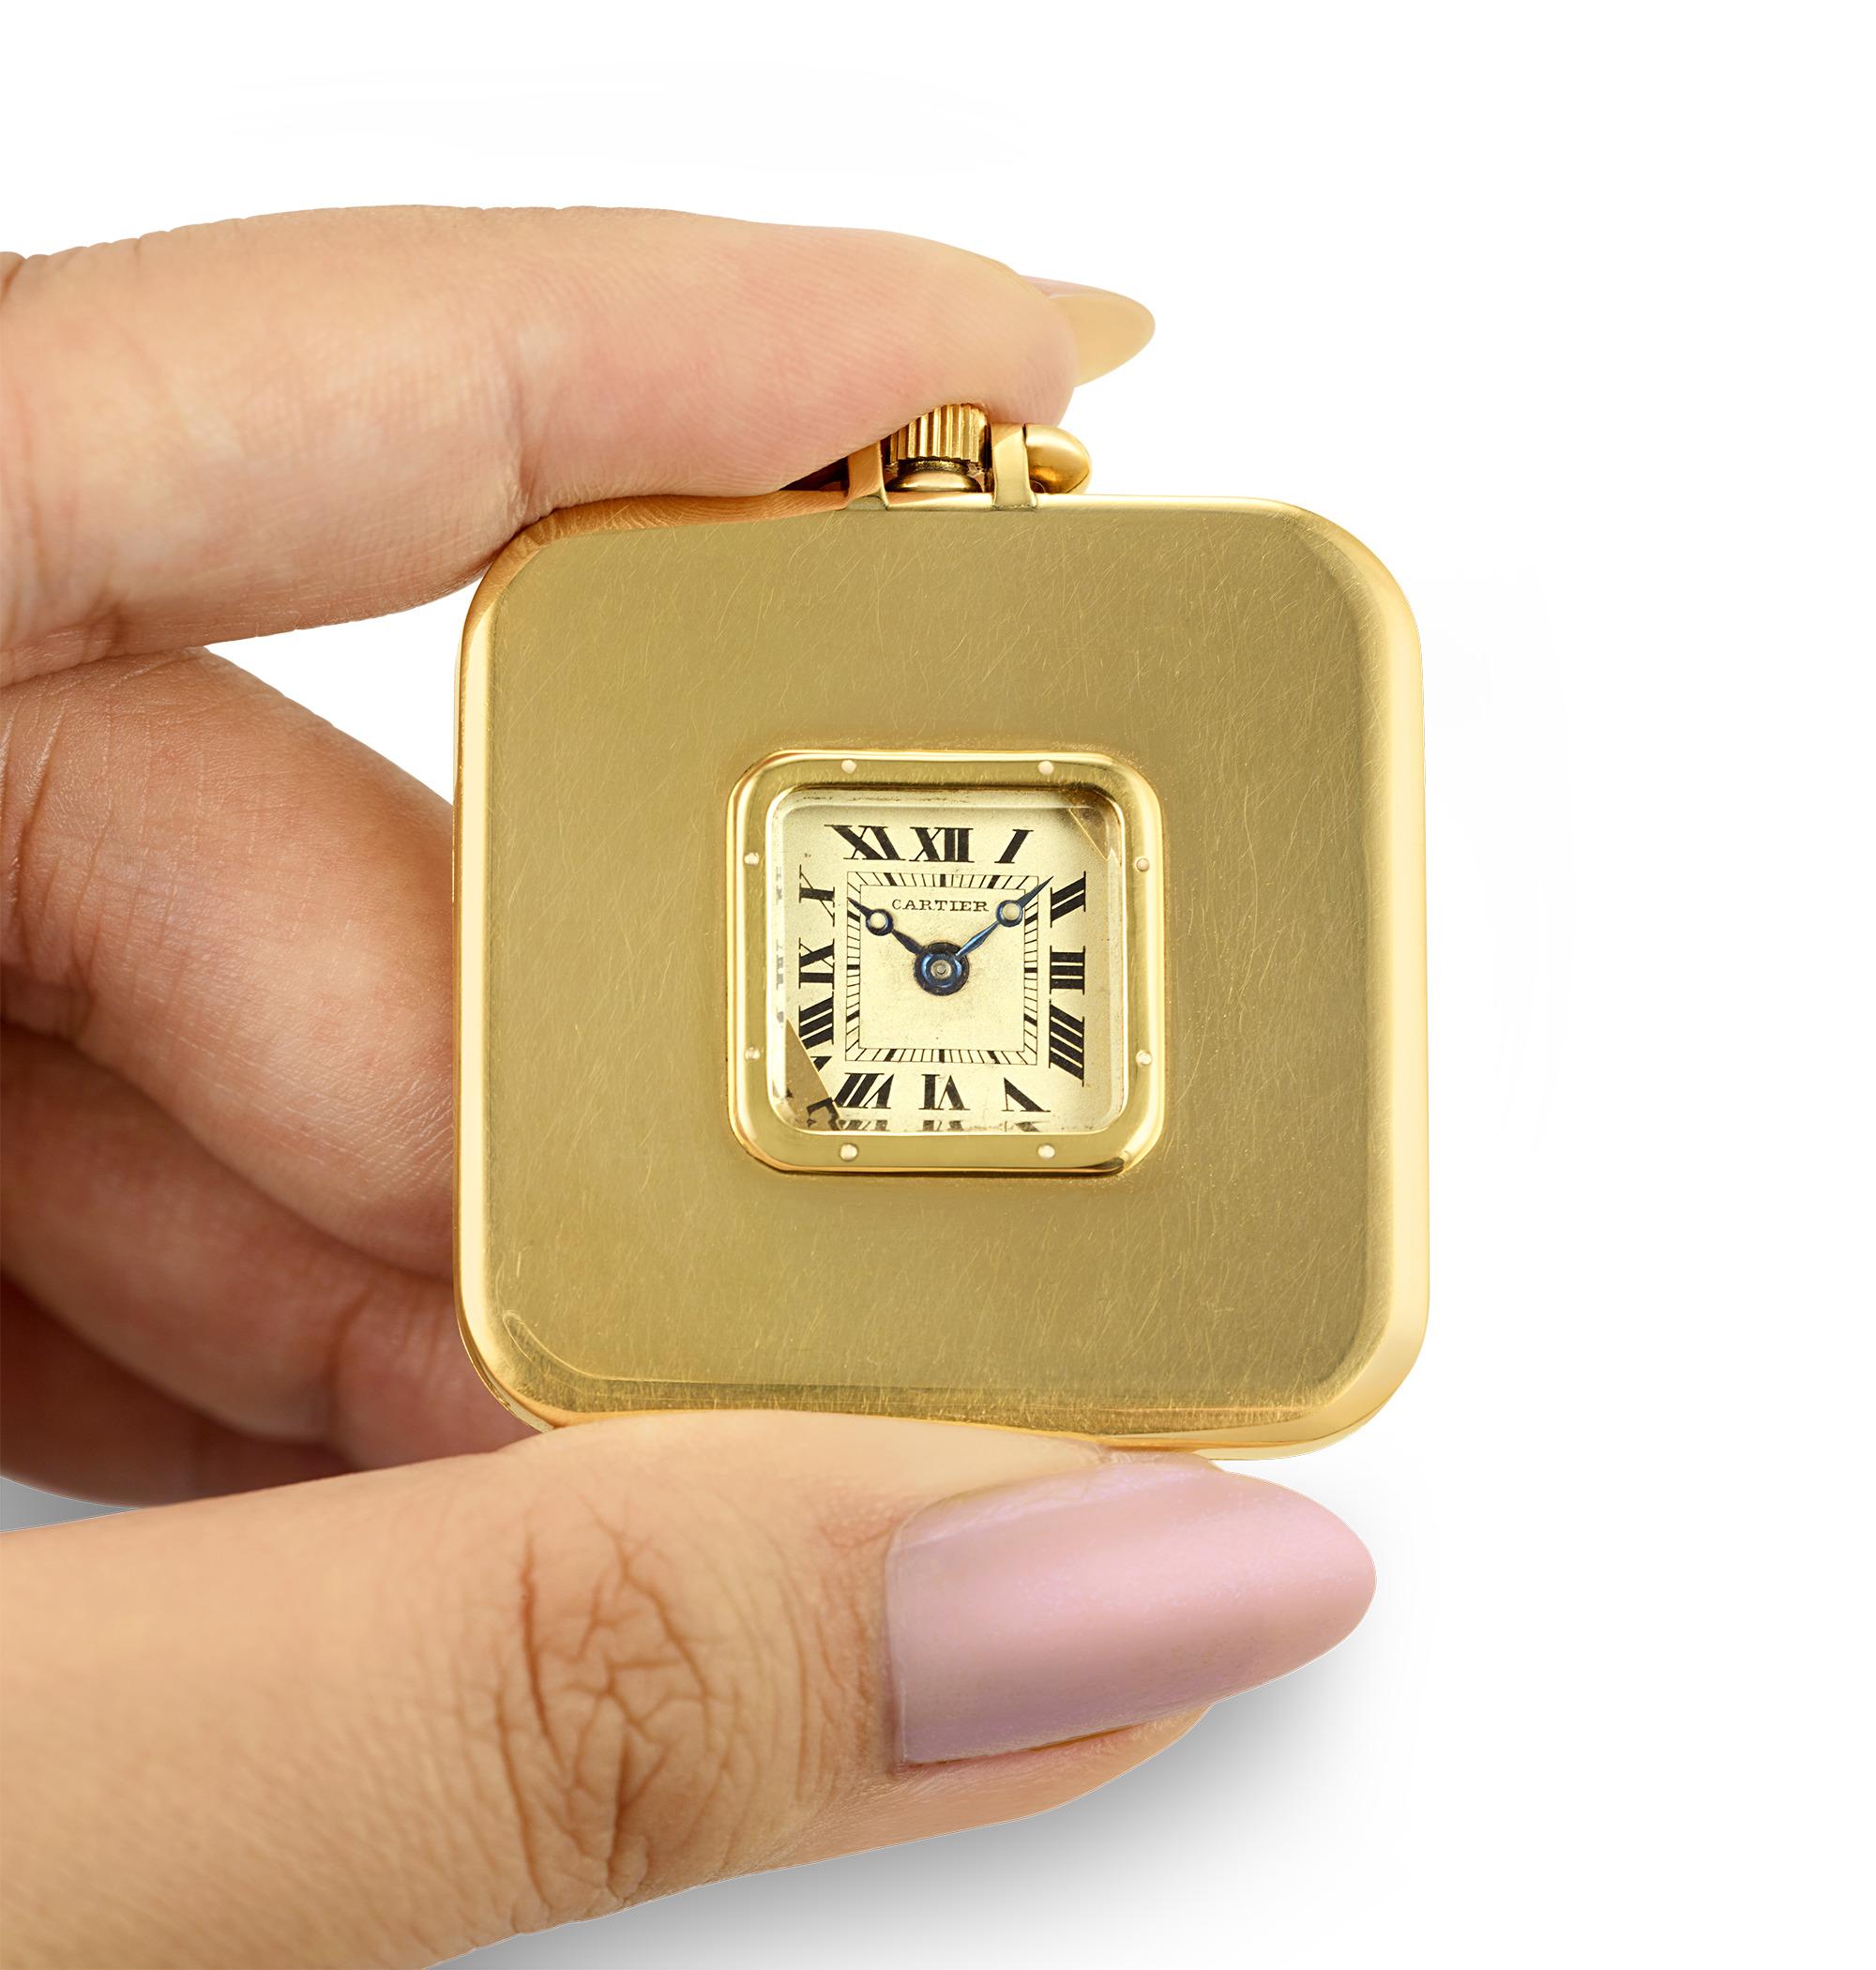 Diese Art-Déco-Taschenuhr wurde von dem berühmten Unternehmen Cartier hergestellt. Der quadratische Zeitmesser ist in einem 18-karätigen Goldgehäuse untergebracht und besticht durch sein schlankes Design. Das Zifferblatt der Uhr, das sich durch